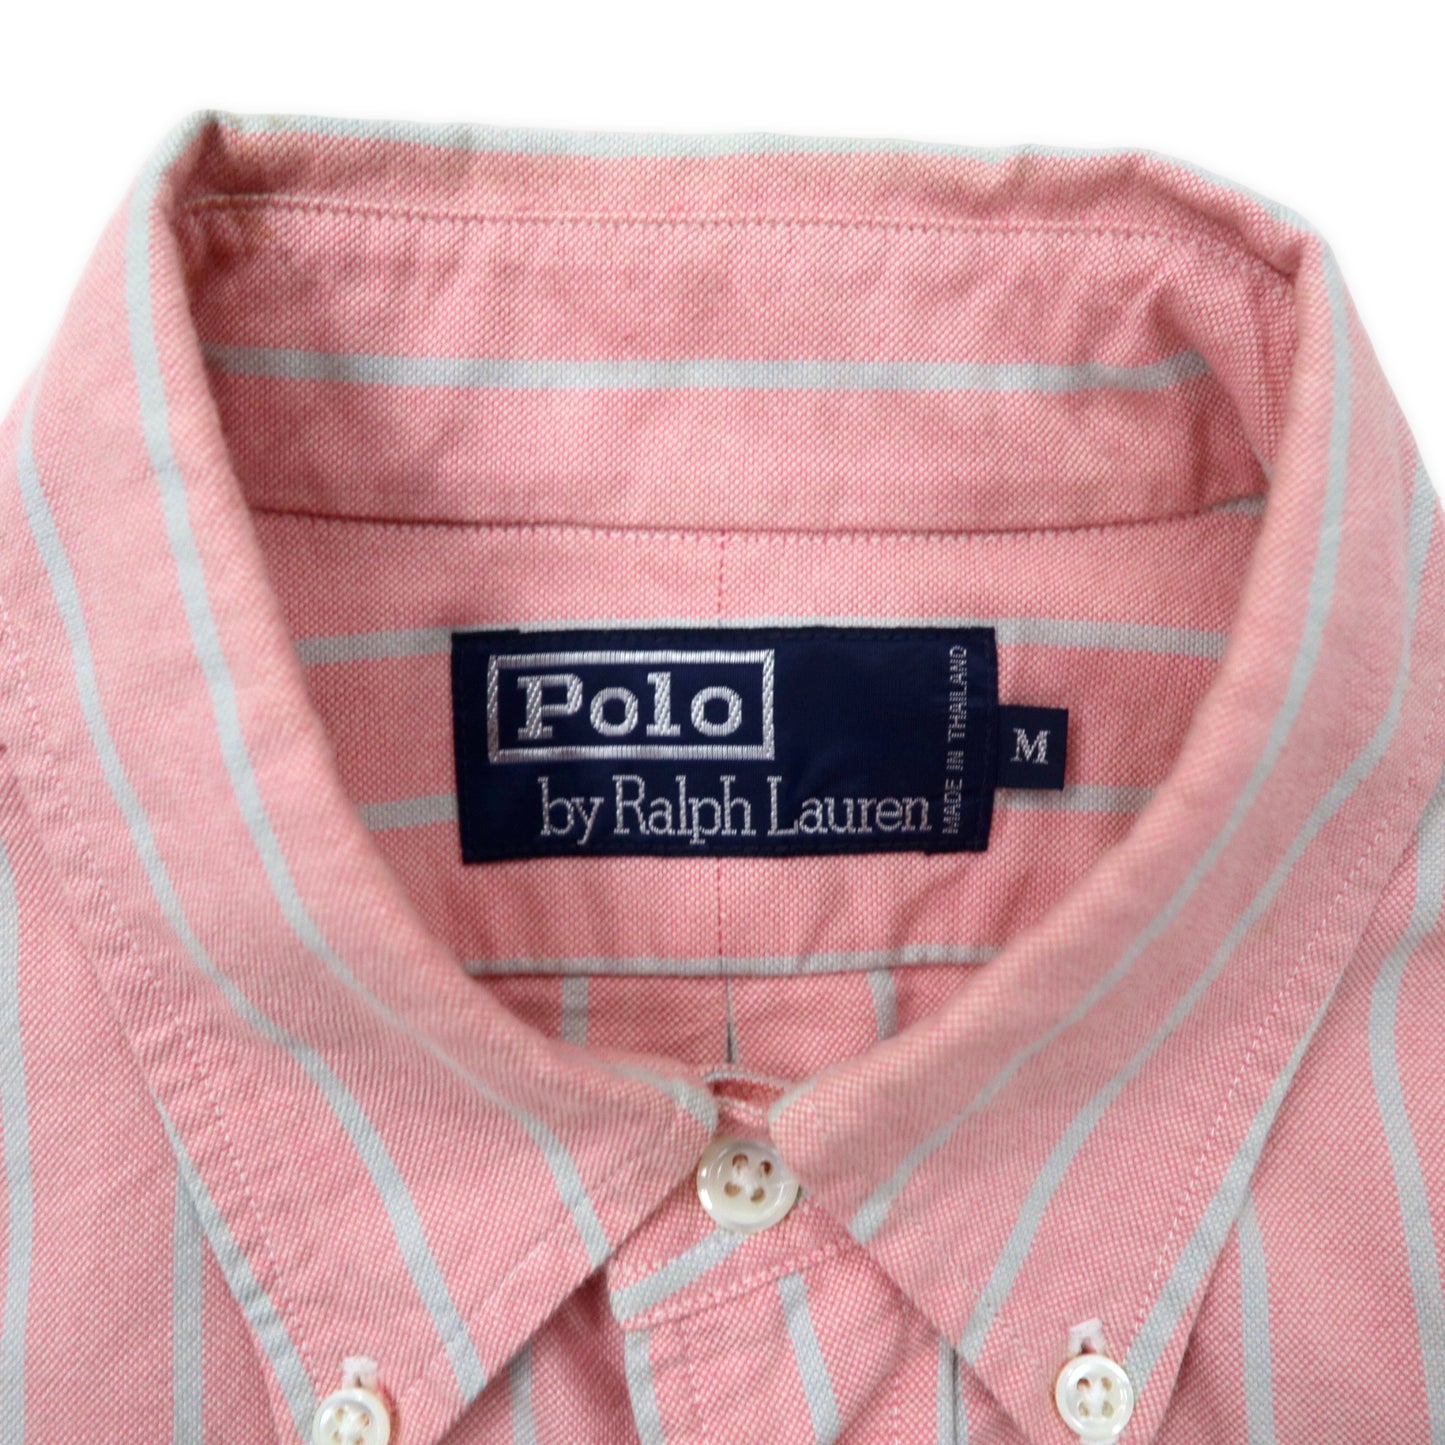 Polo by Ralph Lauren オックスフォード ボタンダウンシャツ M ピンク ストライプ コットン スモールポニー刺繍